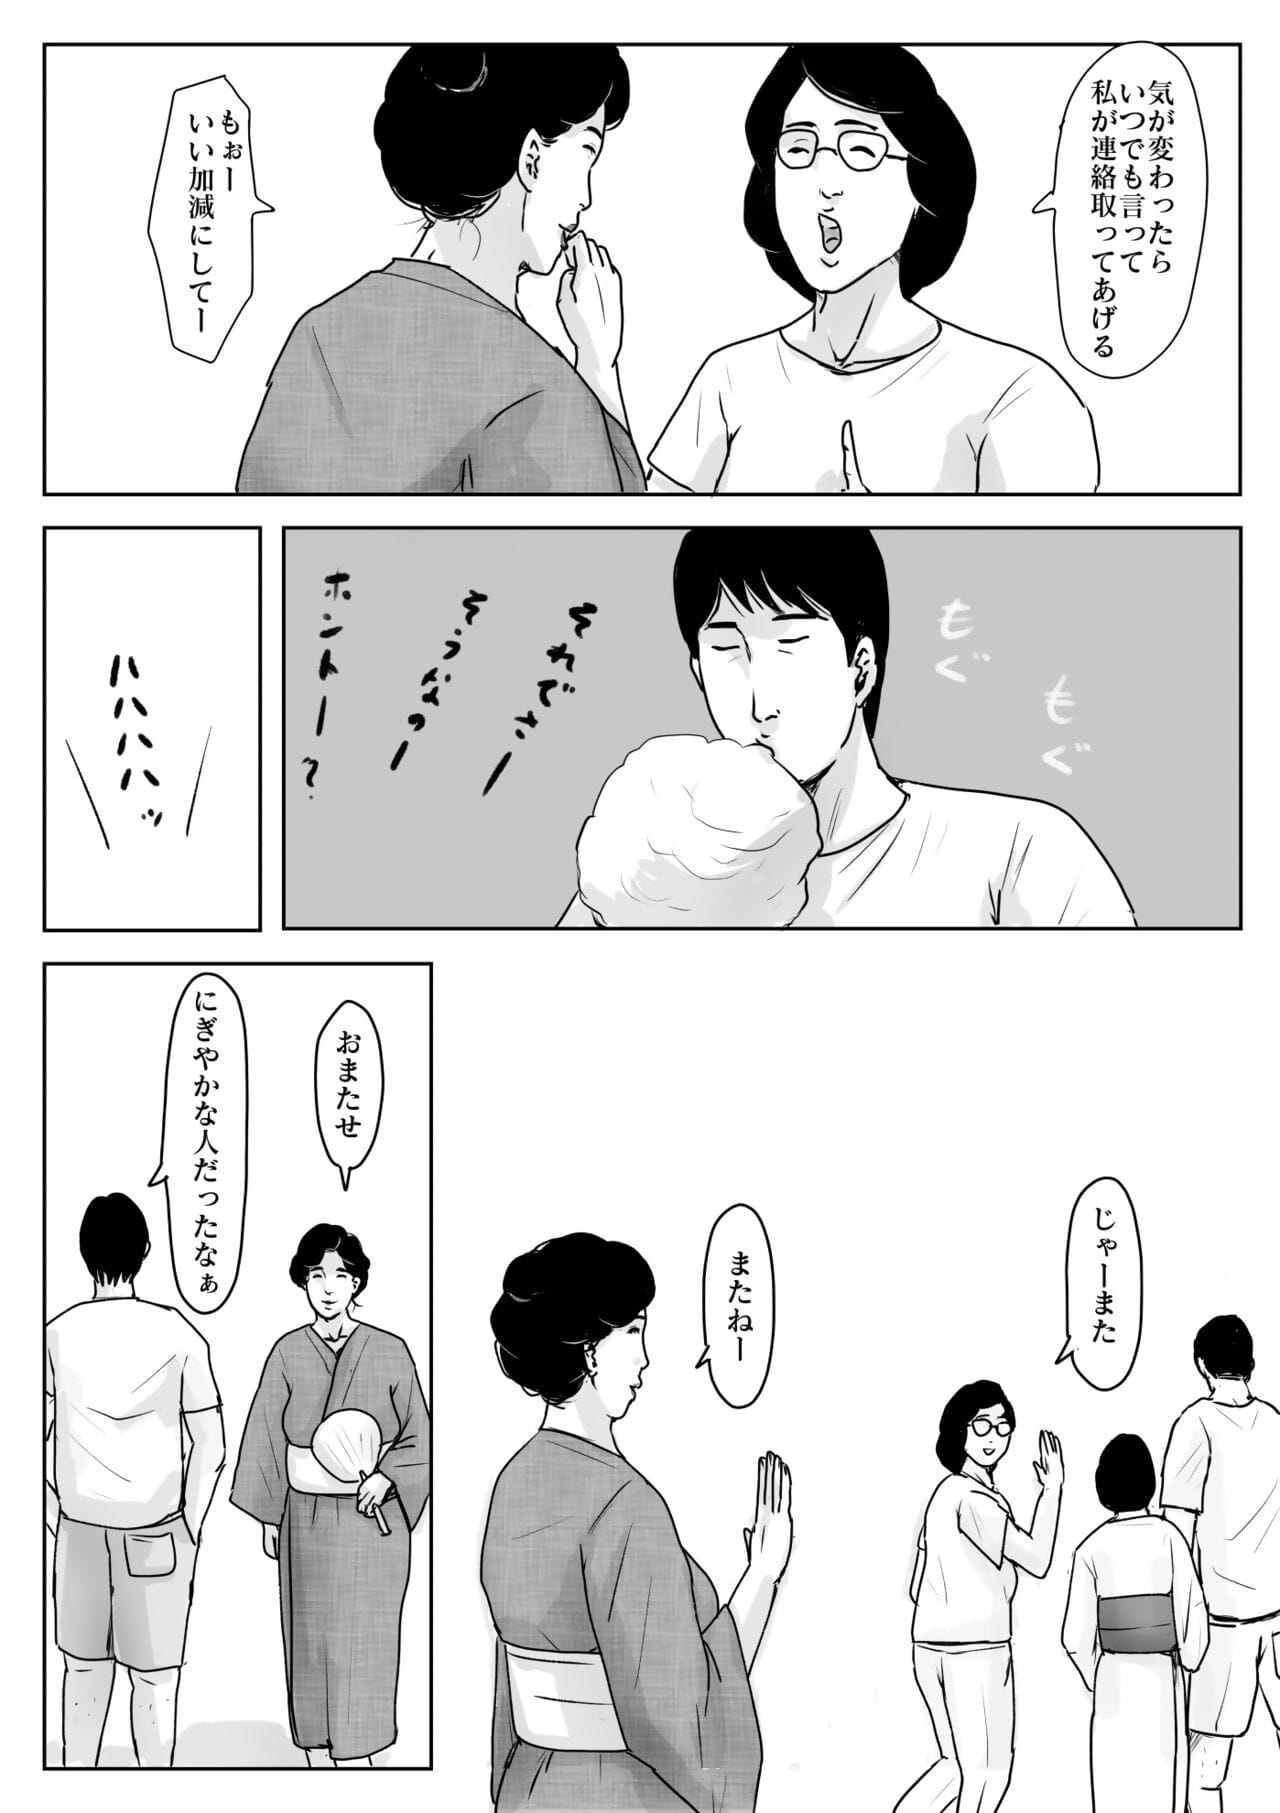 笑 ni koishite #3 omoide no 夏 page 1